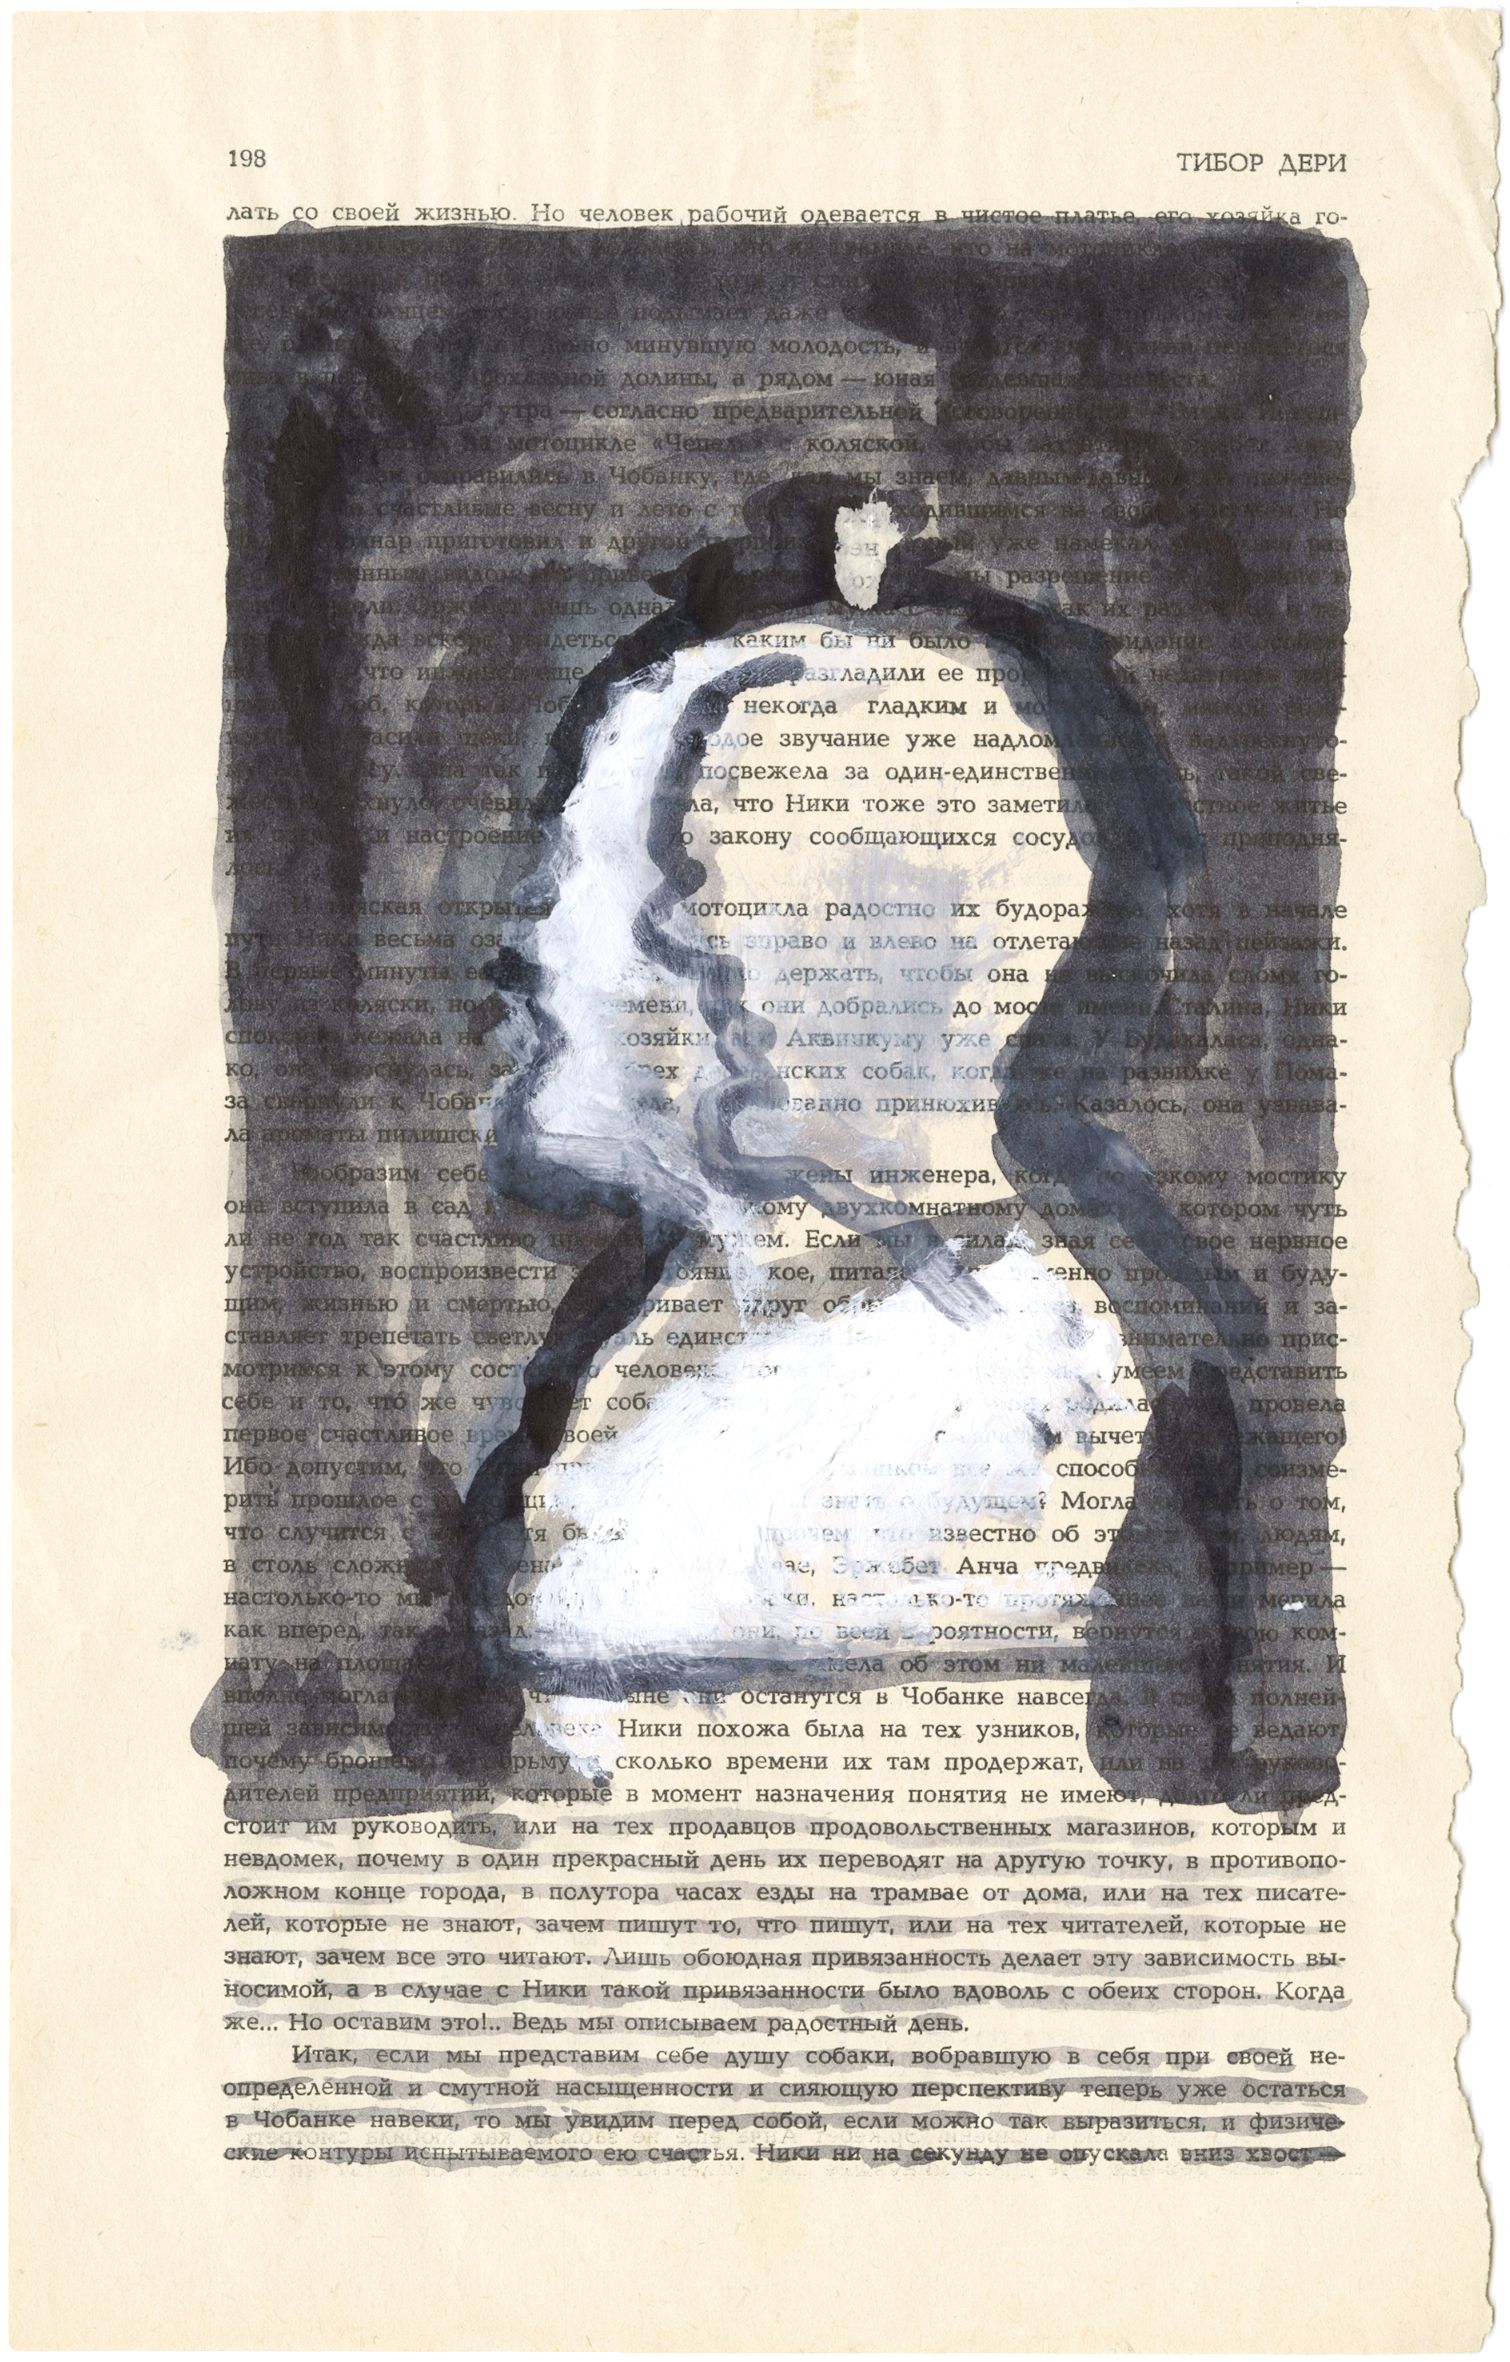 Андрей Анро (Авторская графика - 
                  15 x 25 см) Из серии "Новый мир"